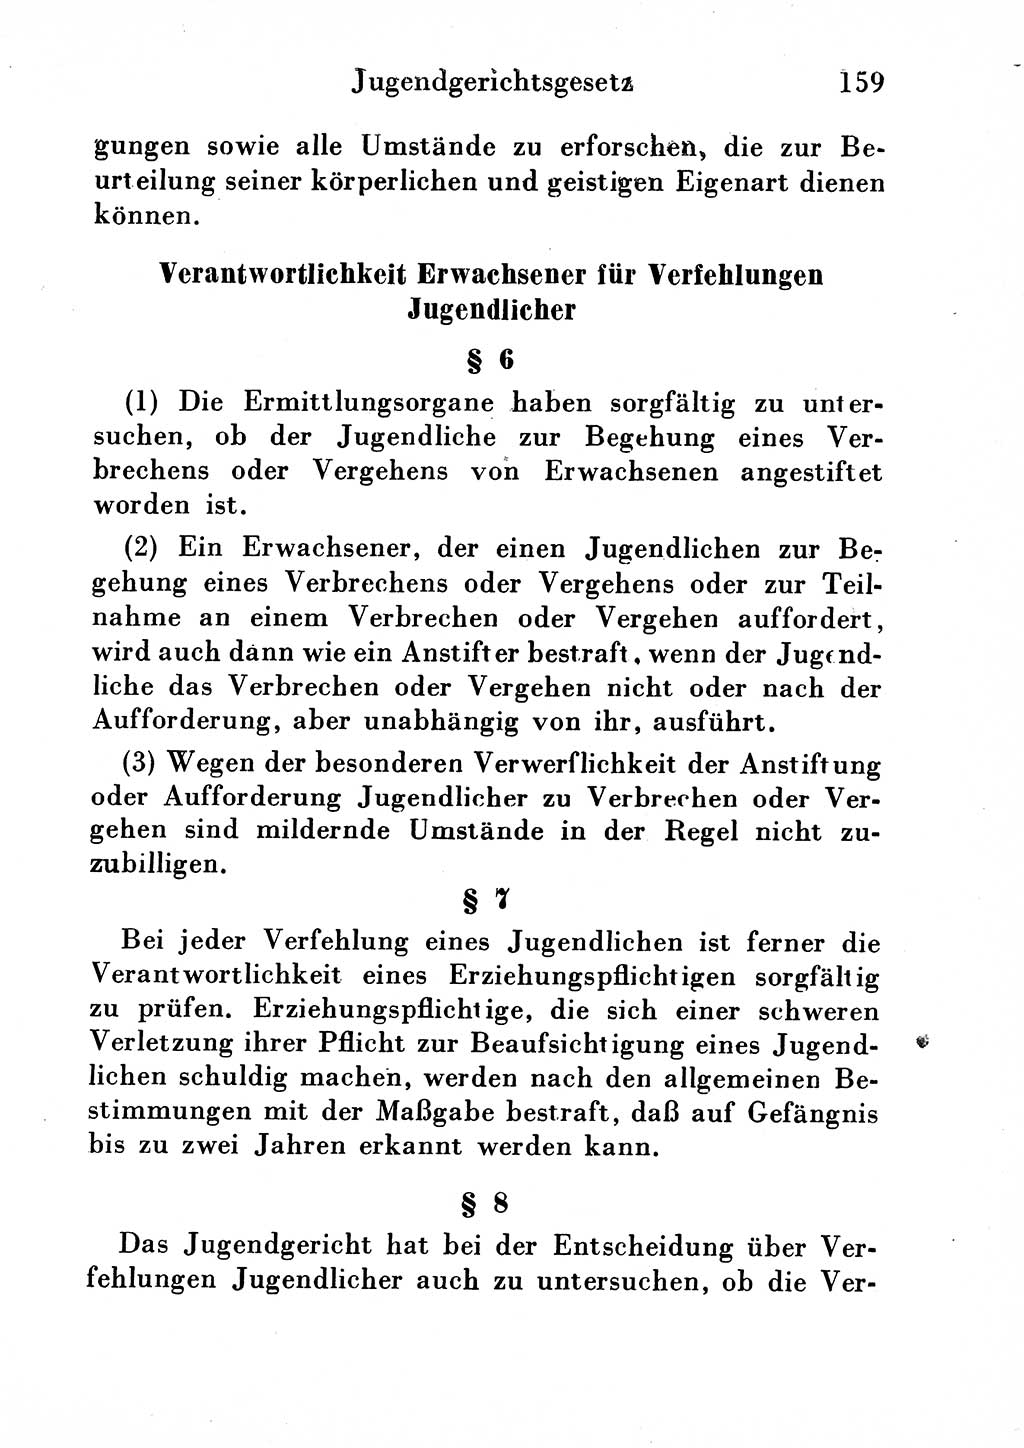 Strafgesetzbuch (StGB) und andere Strafgesetze [Deutsche Demokratische Republik (DDR)] 1954, Seite 159 (StGB Strafges. DDR 1954, S. 159)